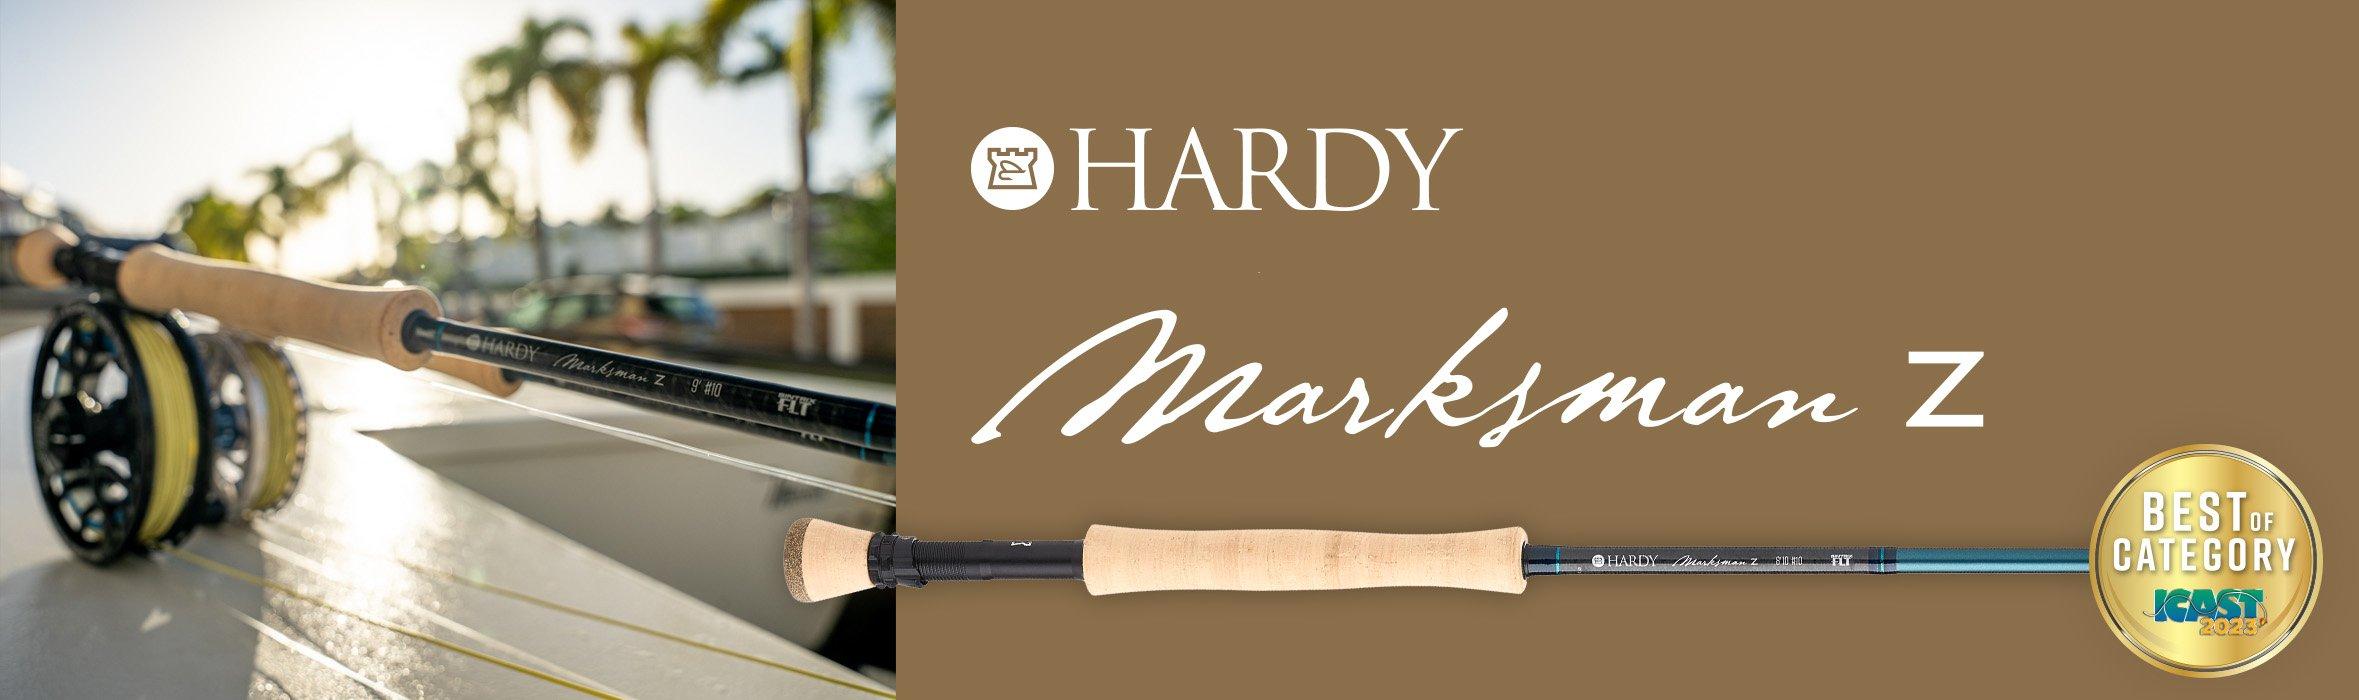 Hardy Marksman Z Saltwater Fly Rods - NEW!